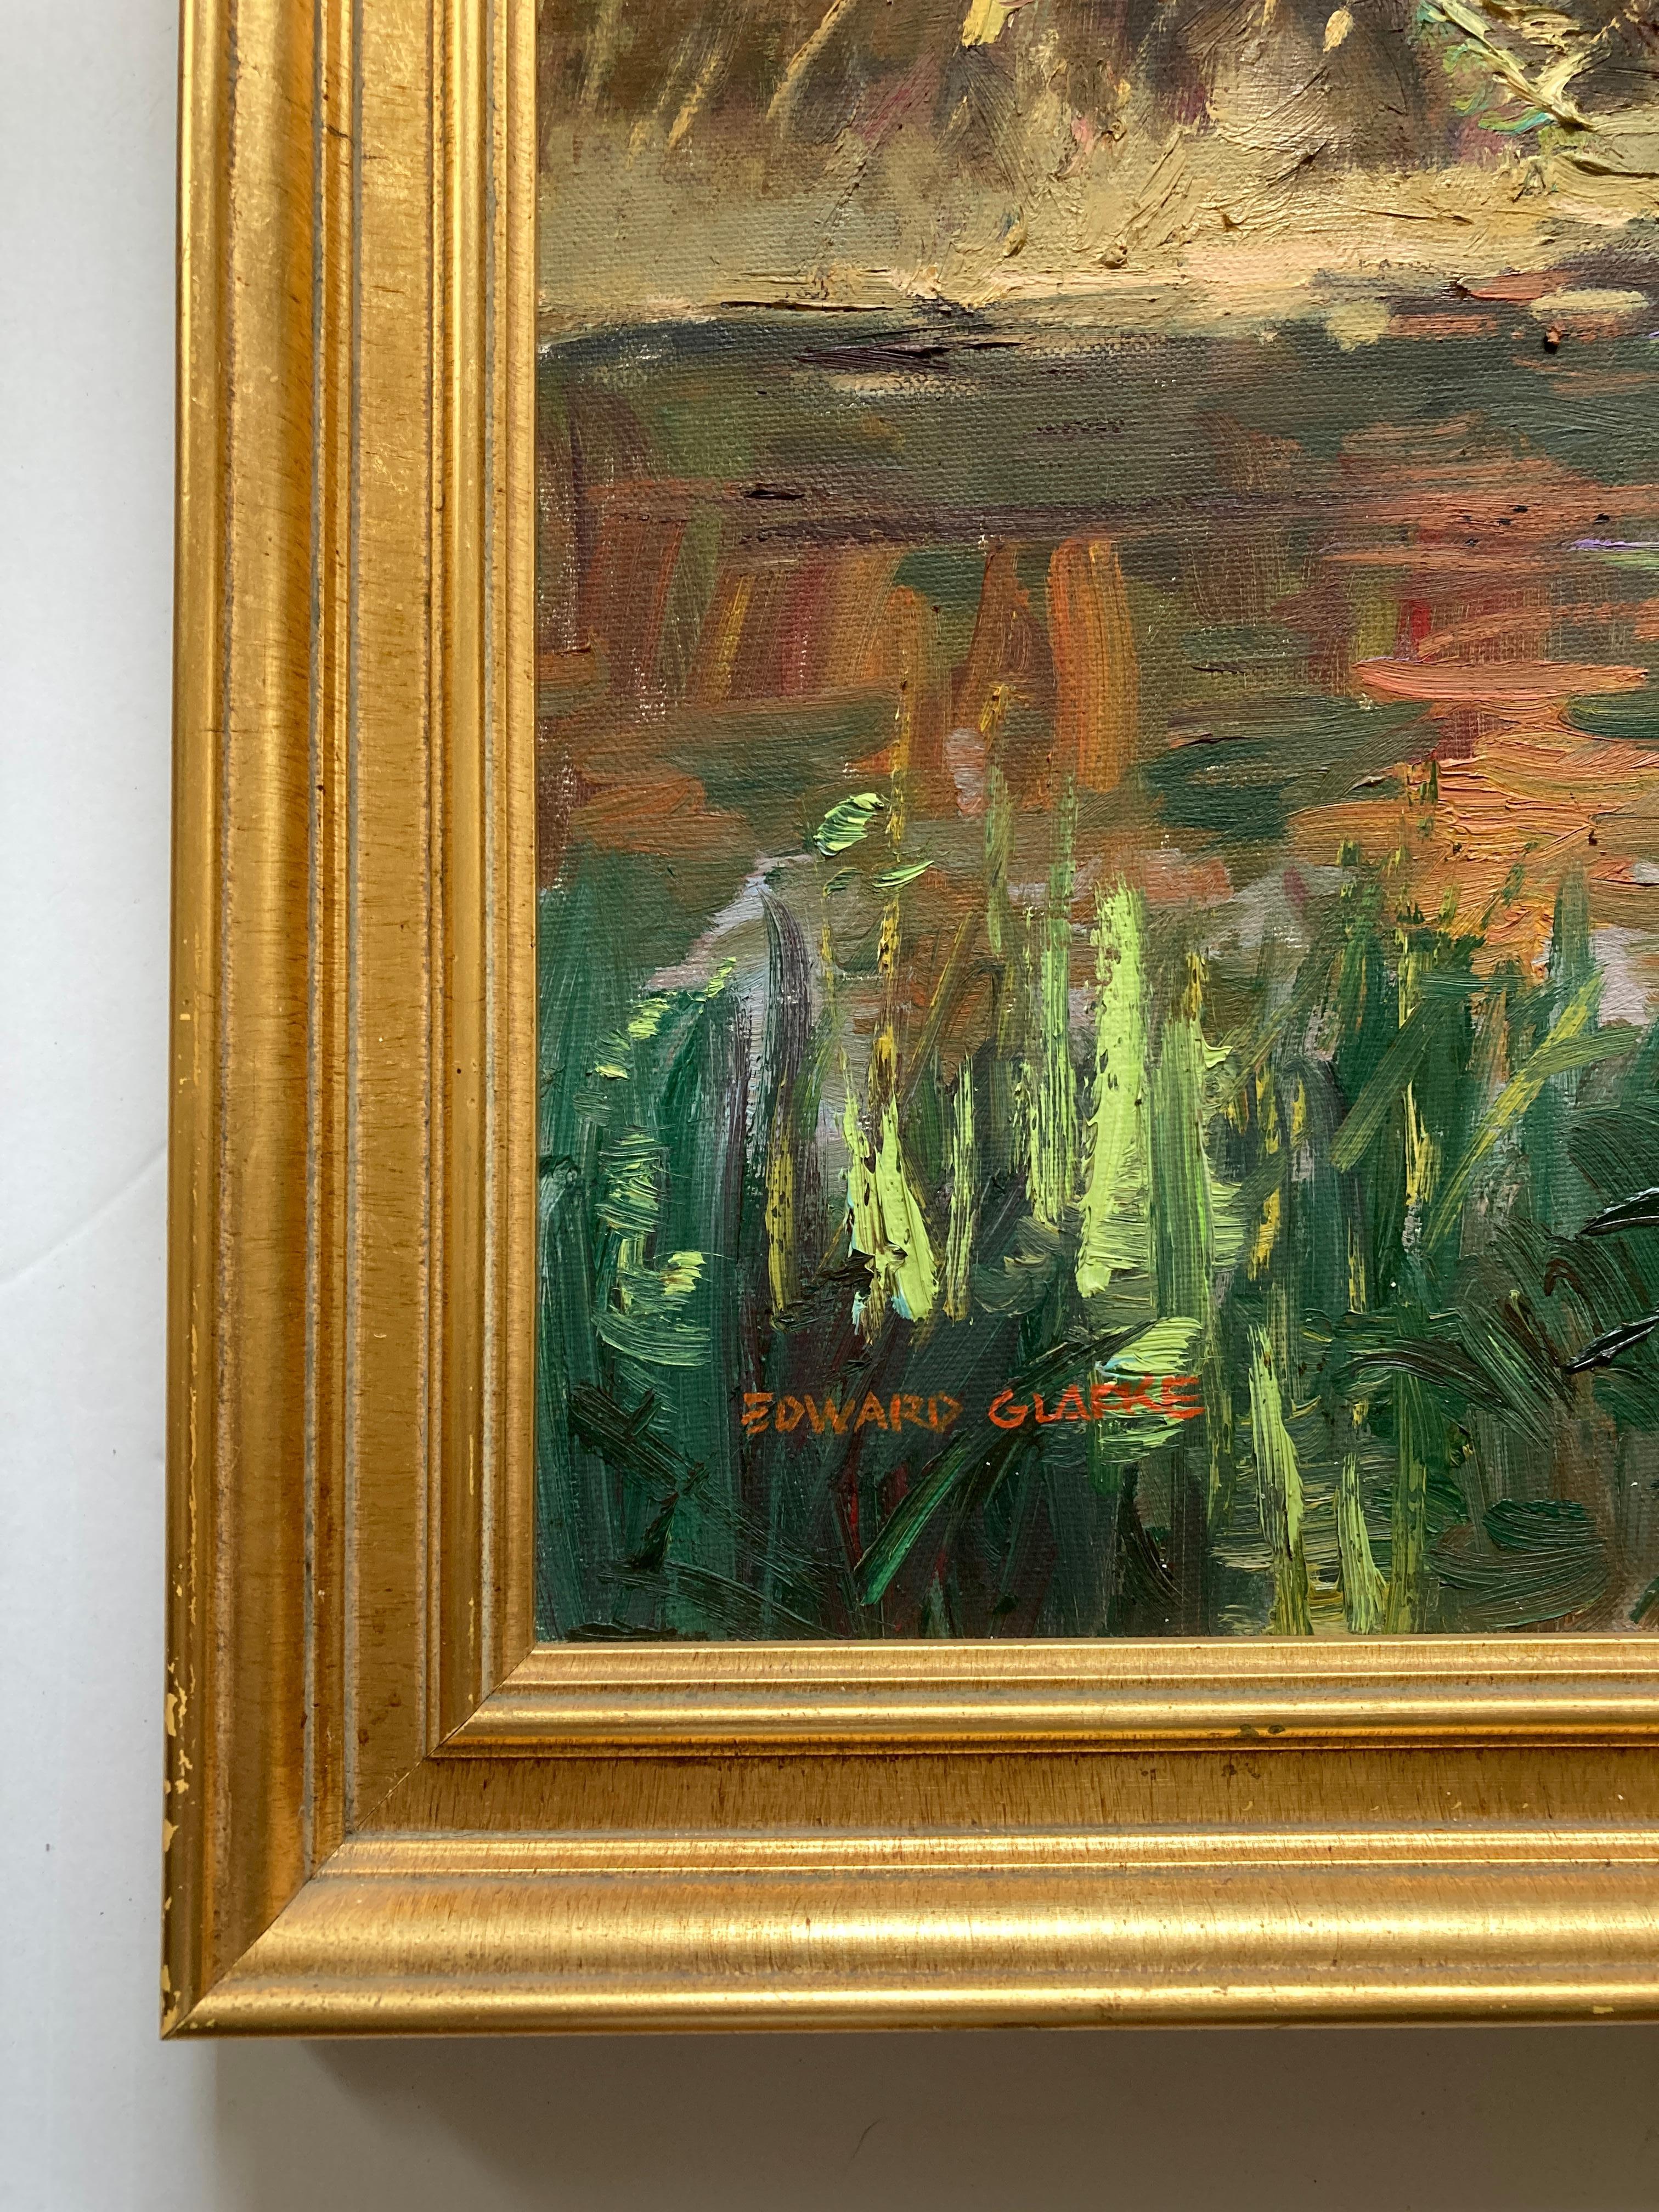 Edward Glafke 'Carmel River' Impressionist Landscape Painting For Sale 4